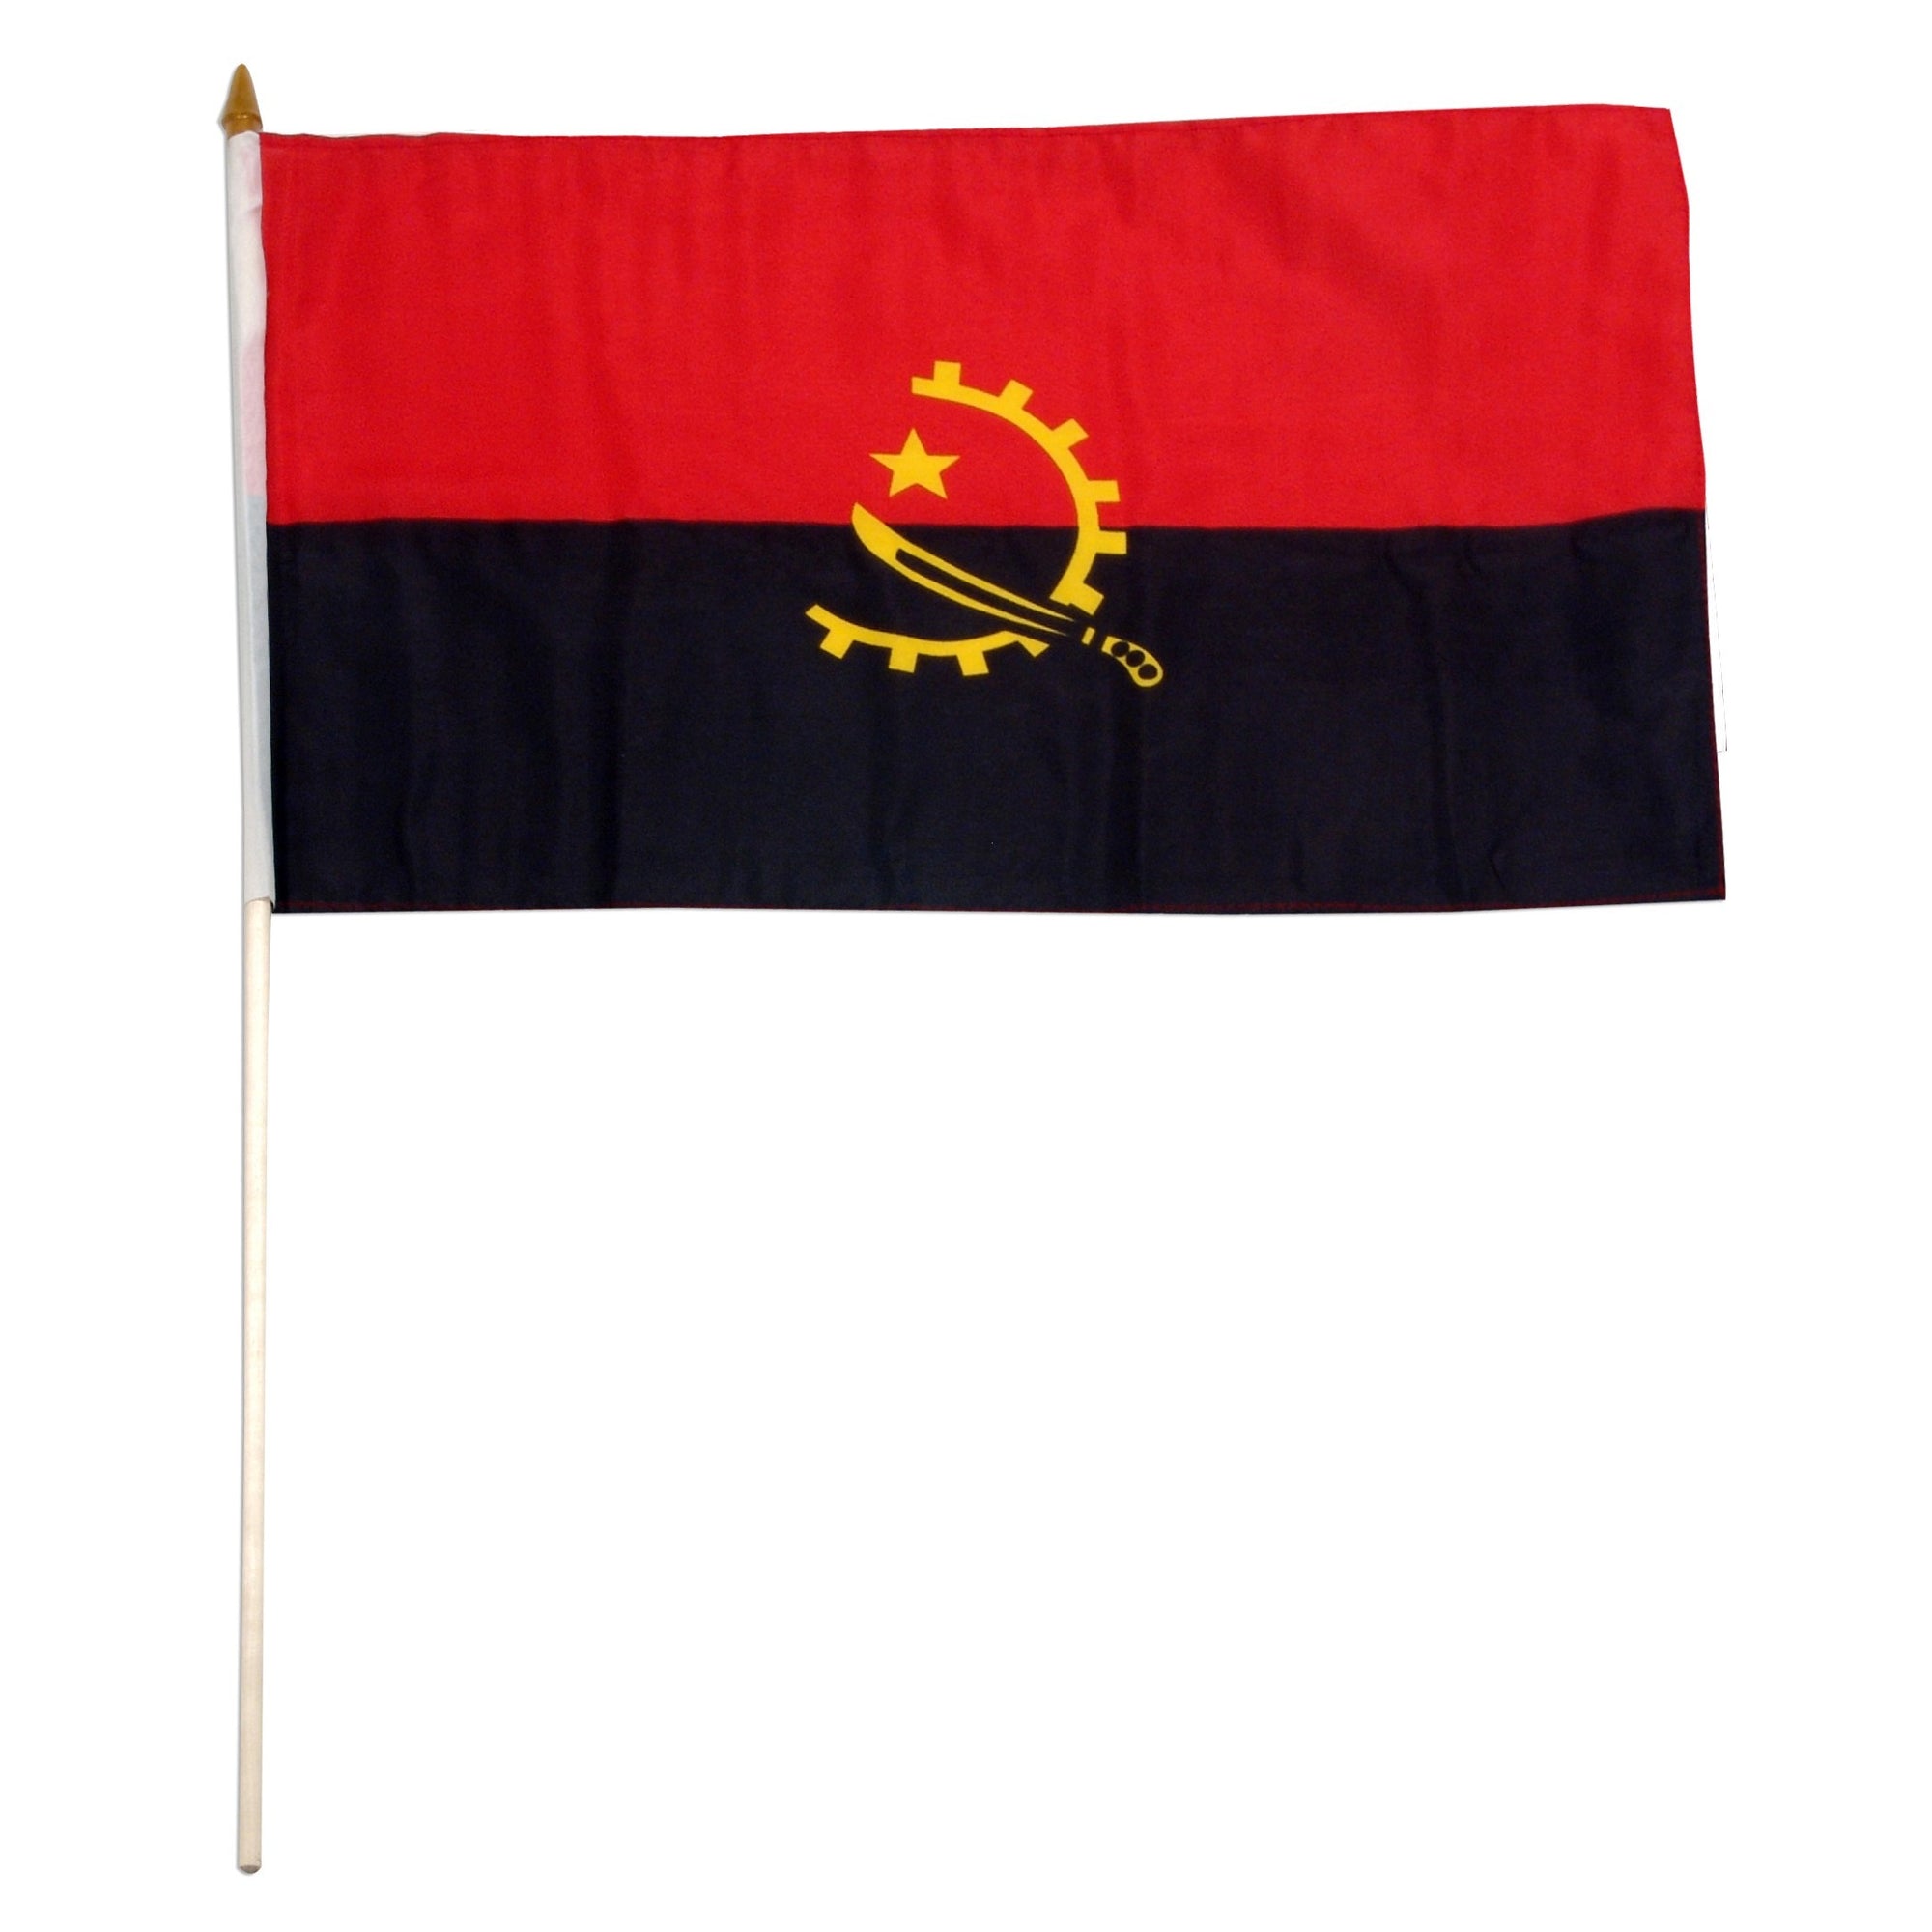 buy angola flag for sale